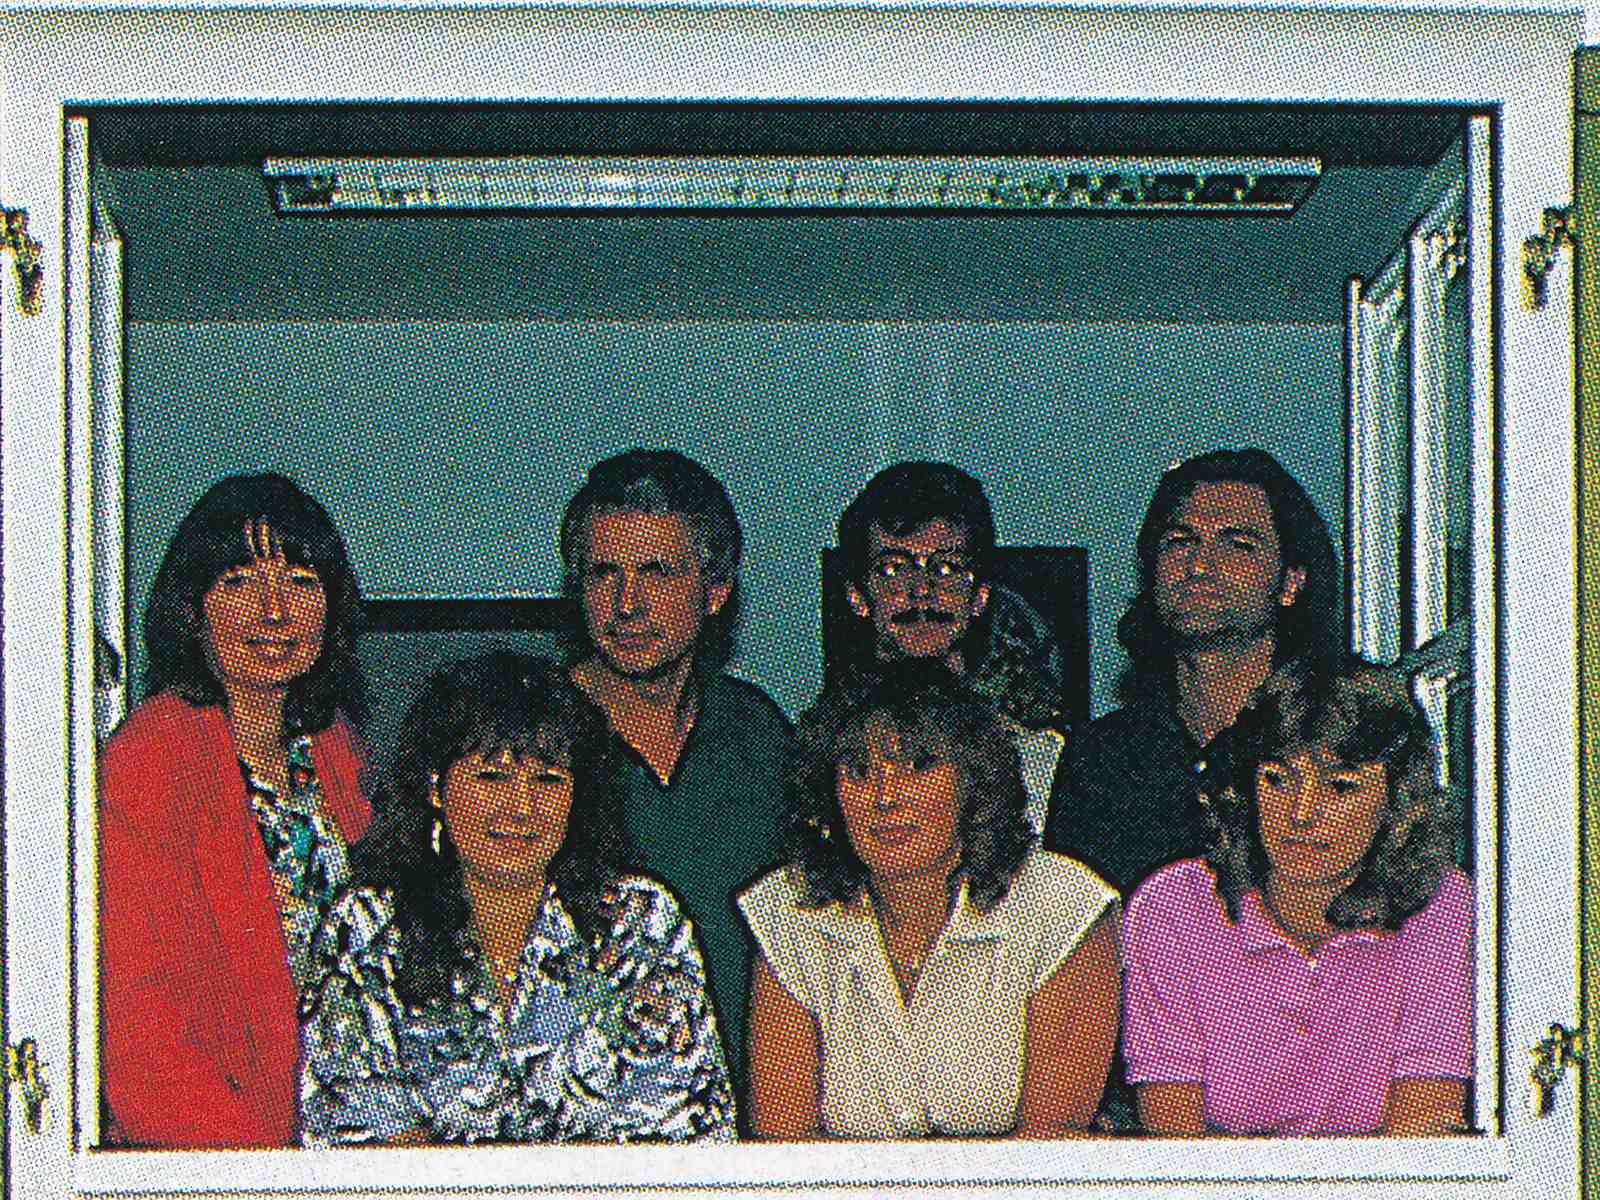 Das noch kleine Chronoswiss Team um Gerd-Rüdiger Lang und seine Frau Francoise Lang (ganz links) in Allach 1988